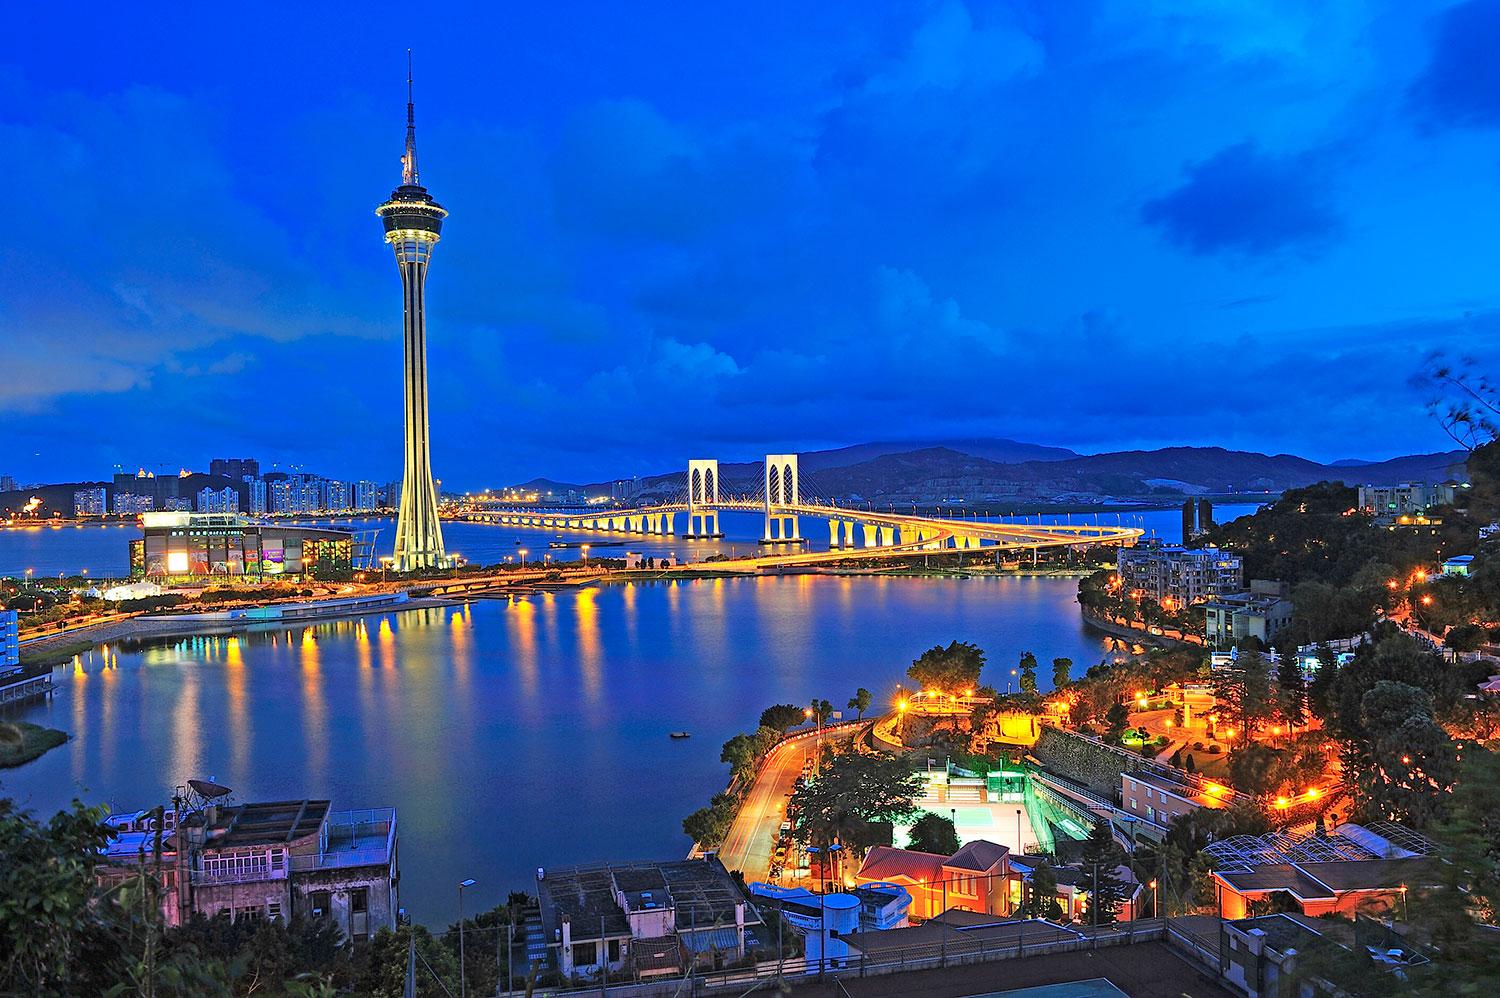 Macau tower dominerar i den forna portugisiska kolonin.